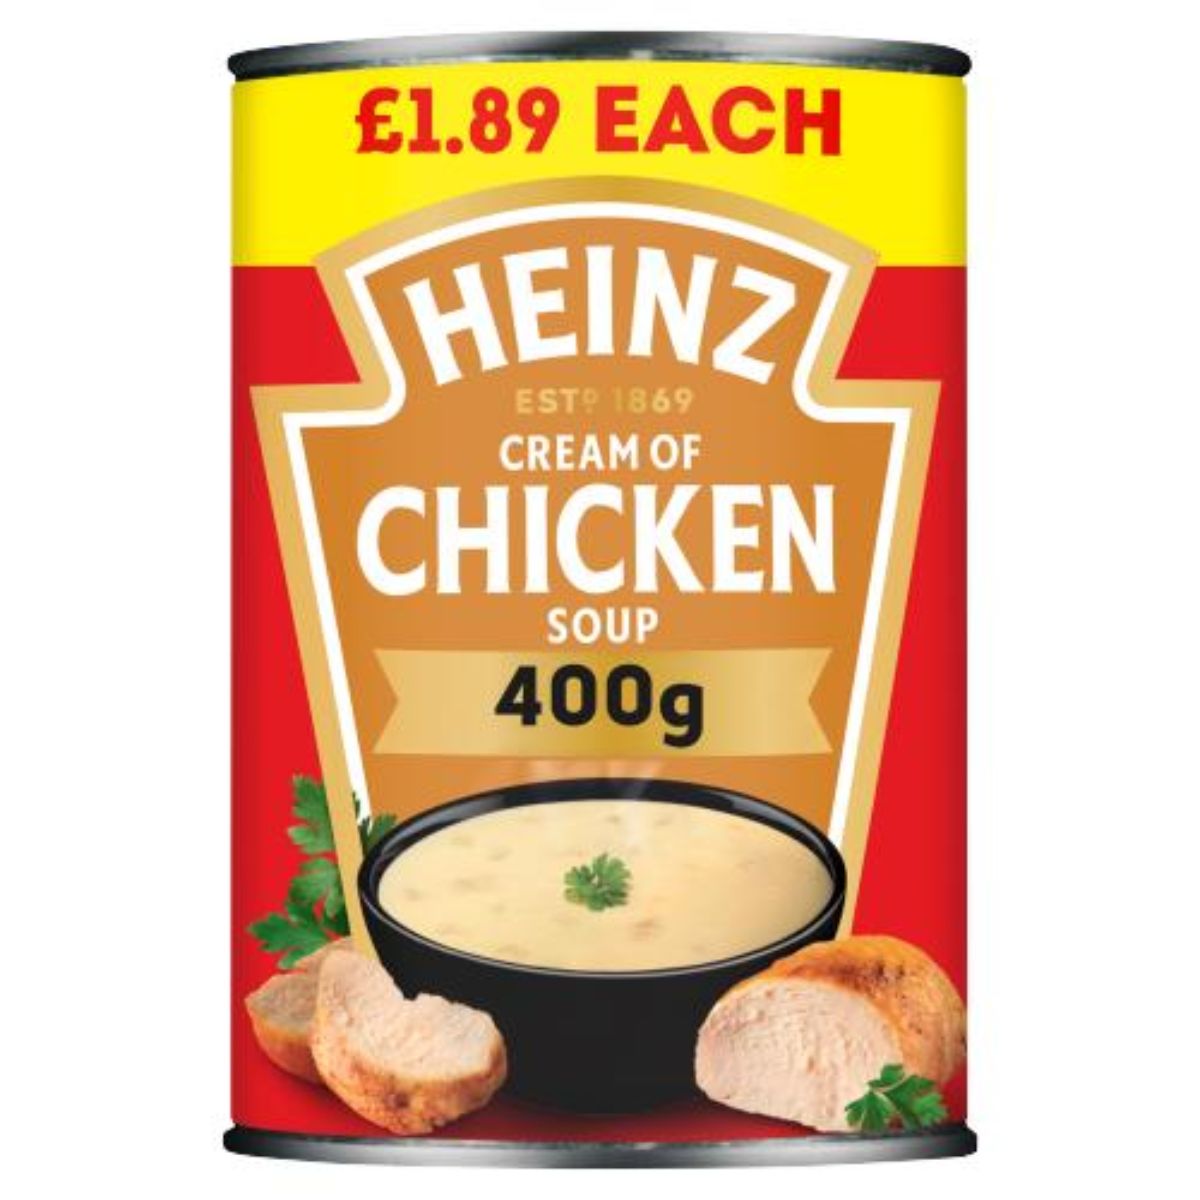 Heinz - Cream of Chicken Soup - 400g.